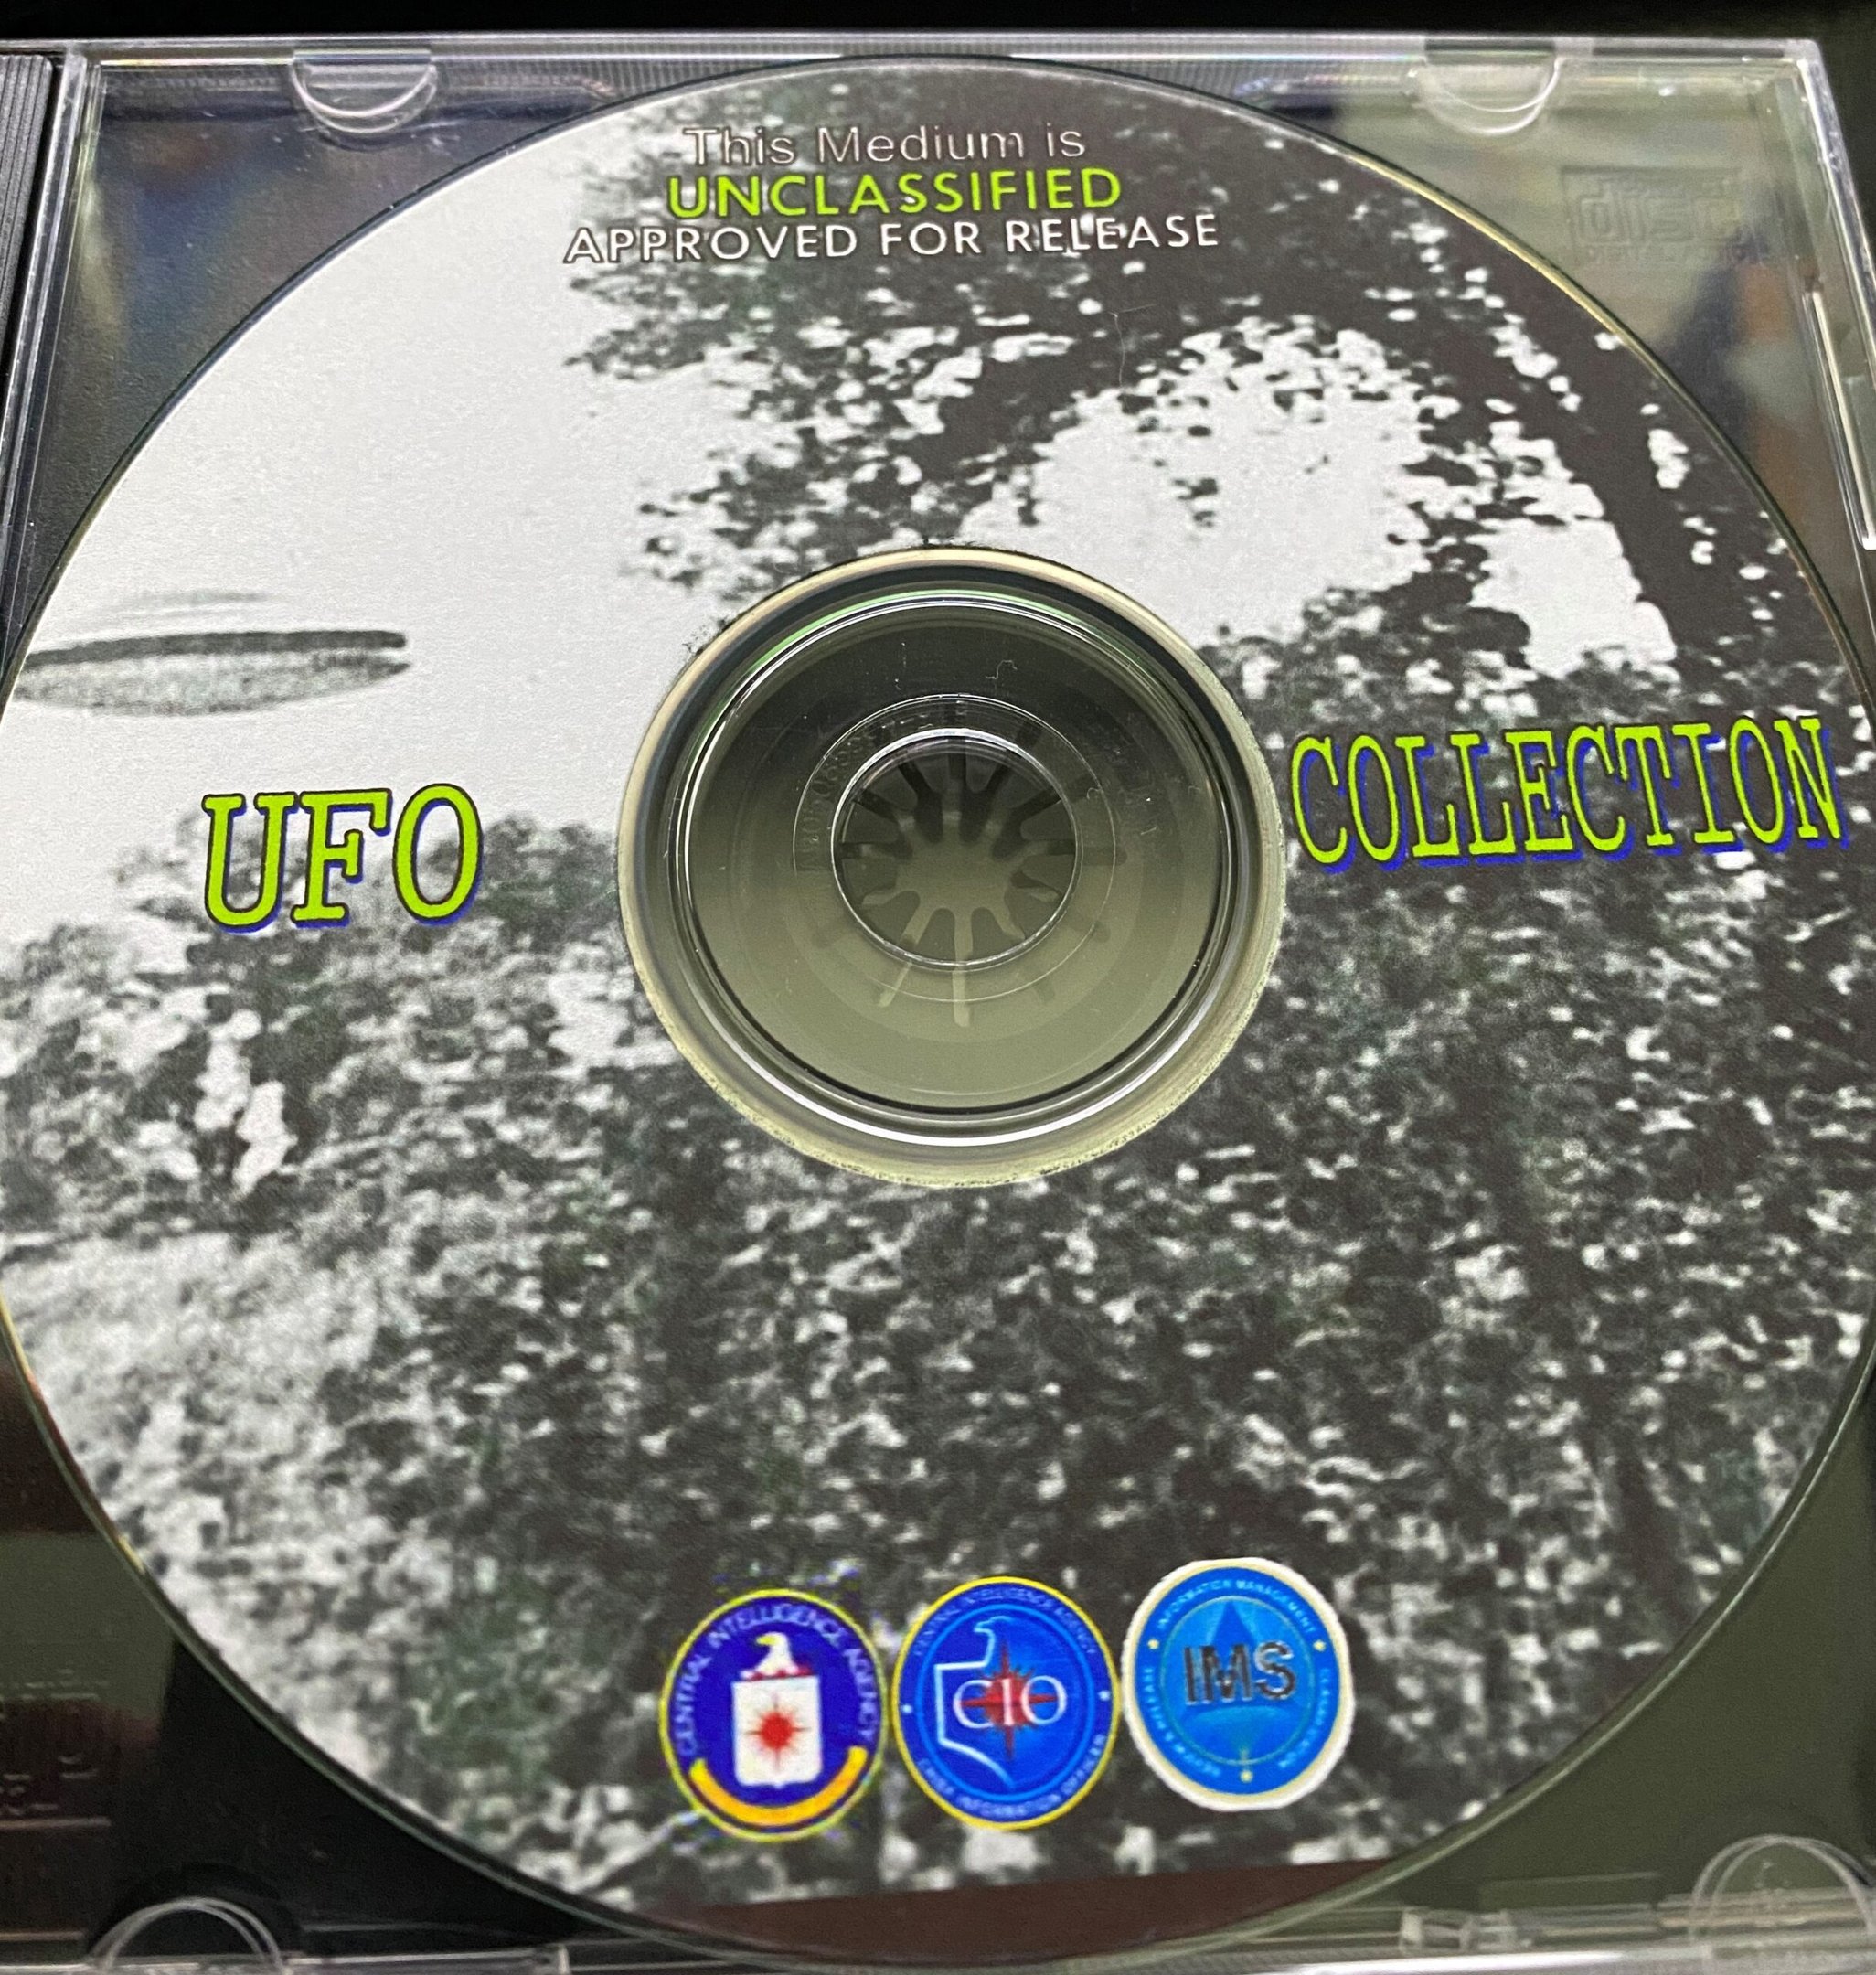 Foto do CD-ROM enviado pela CIA para o site